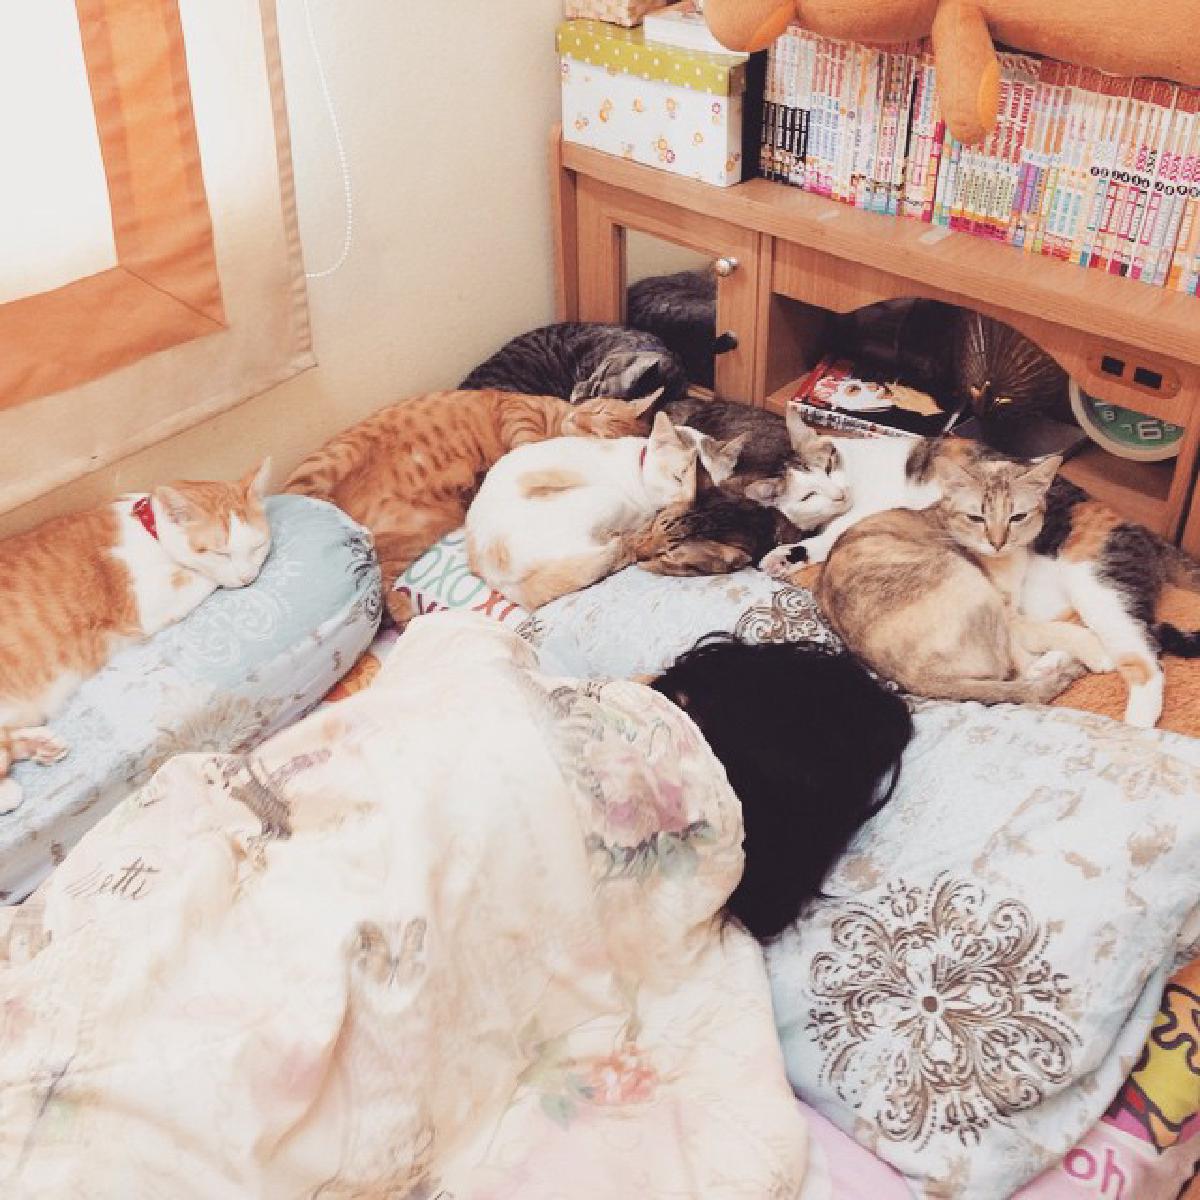 รูปบทความ การรักษาความสะอาดห้องสำหรับคนเลี้ยงสัตว์ในคอนโด รีวิวเลี้ยงแมว 7 ตัว